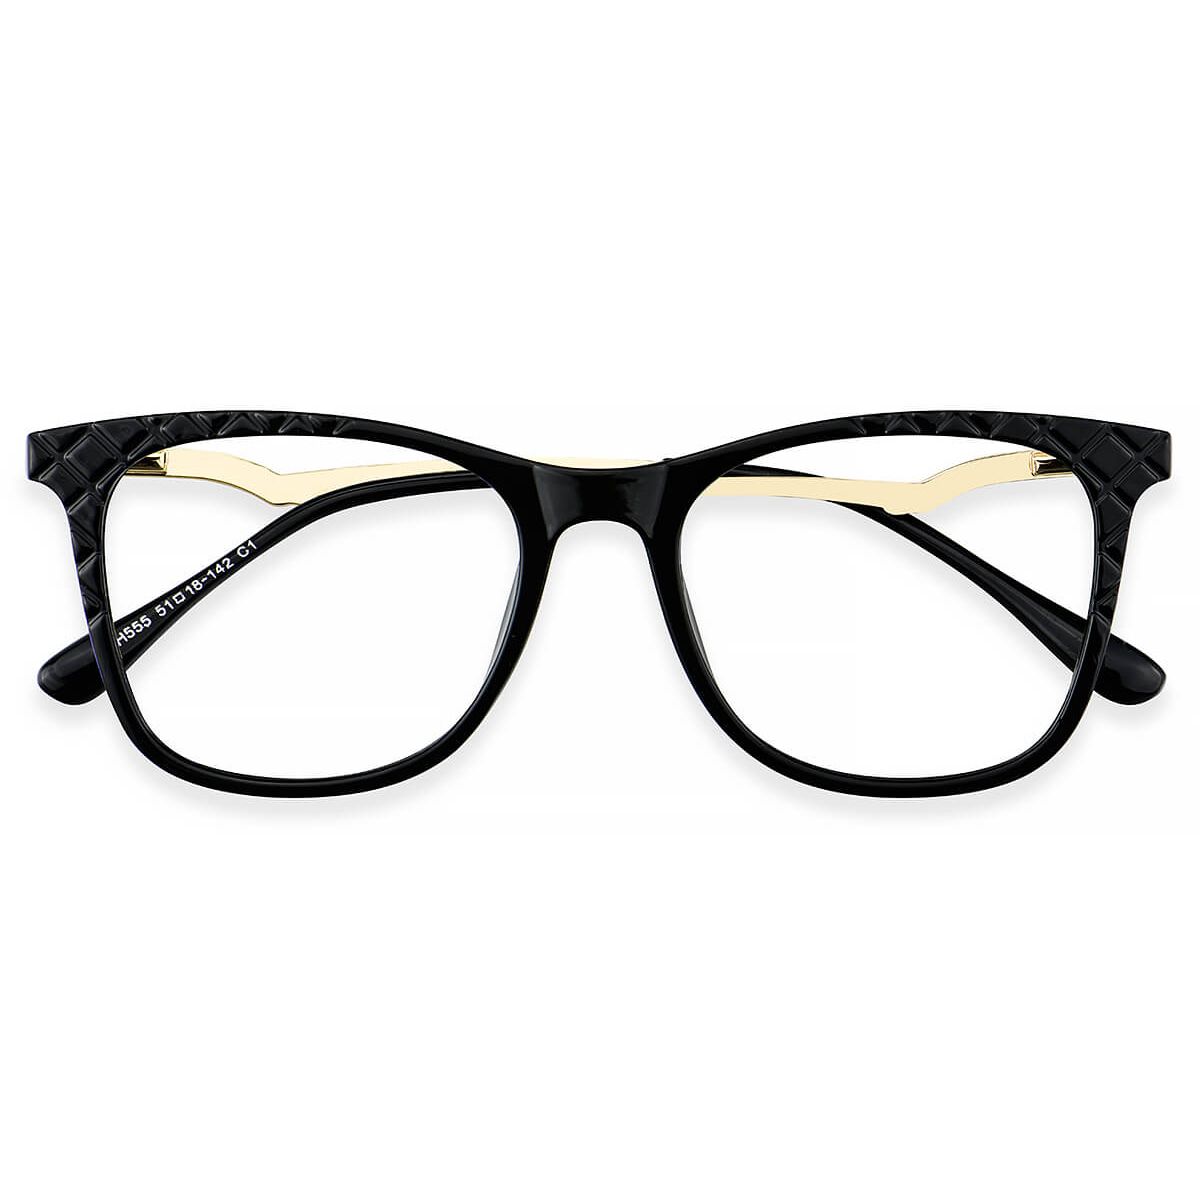 Lh555 Rectangle Black Eyeglasses Frames Leoptique